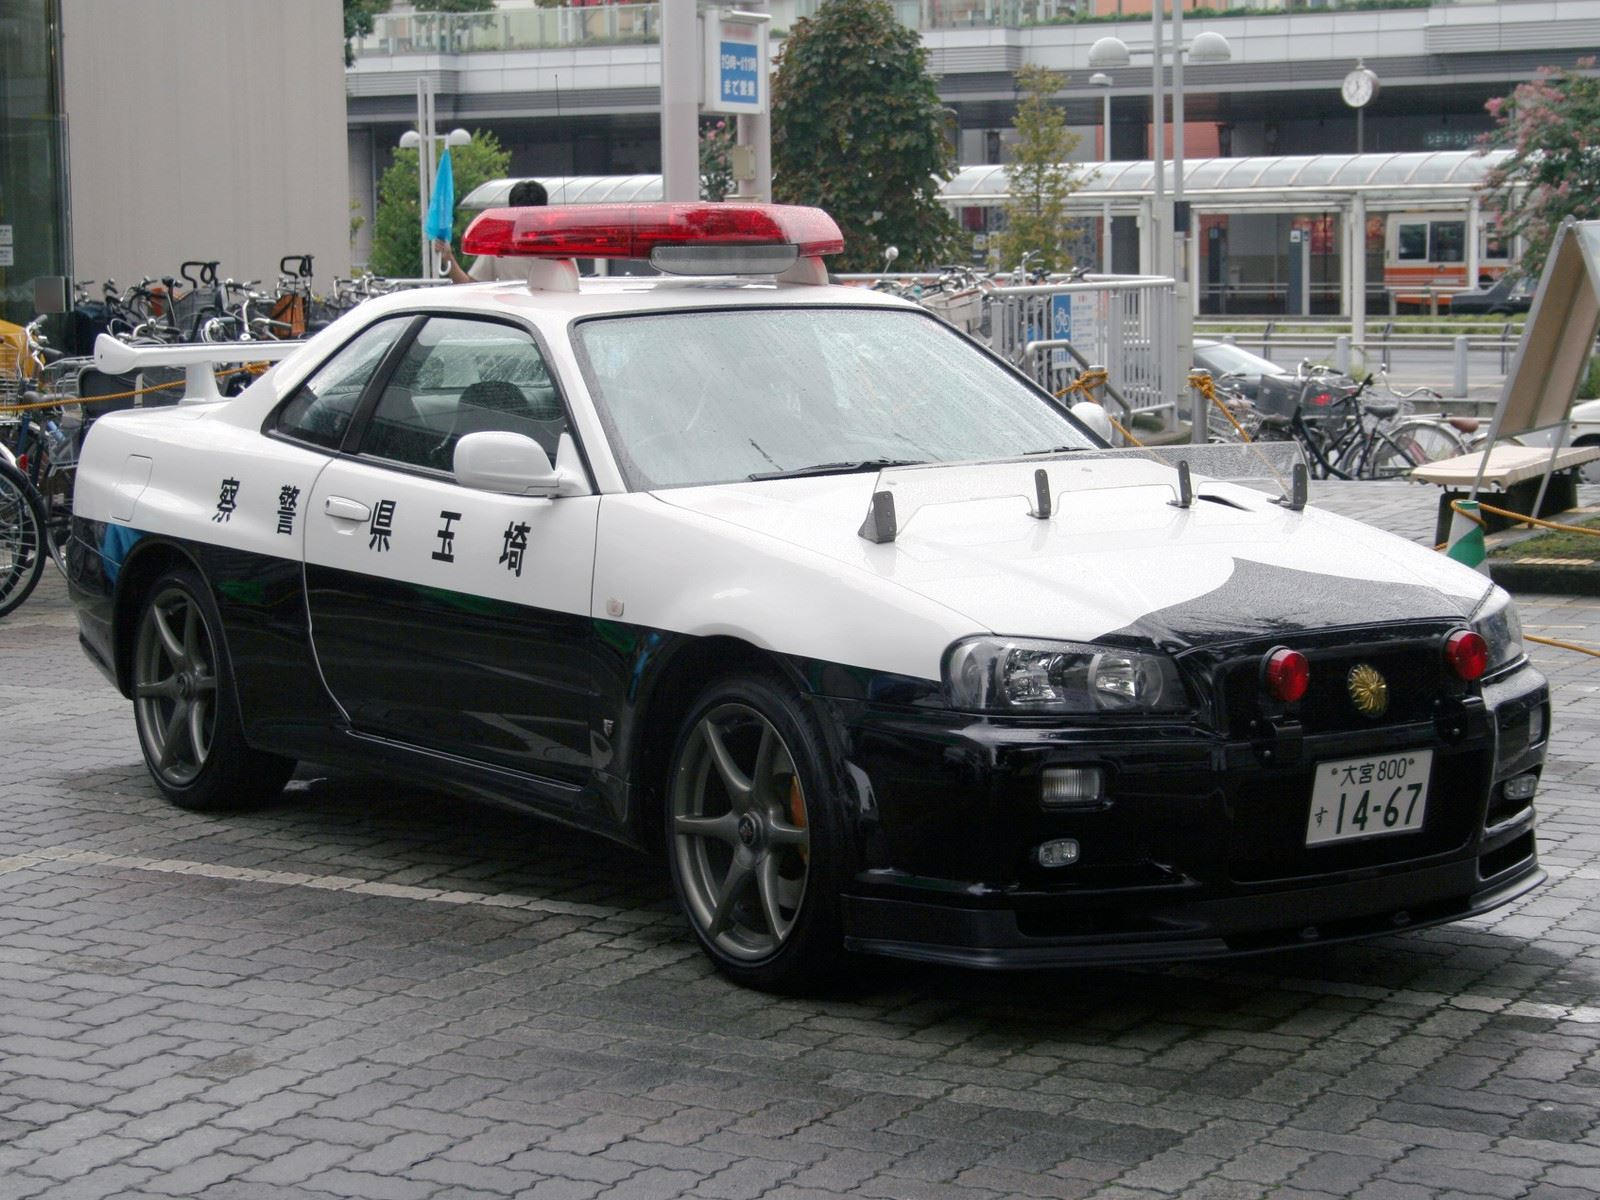 "بالصور" أكثر 10 سيارات شرطة تميزا حول العالم 58